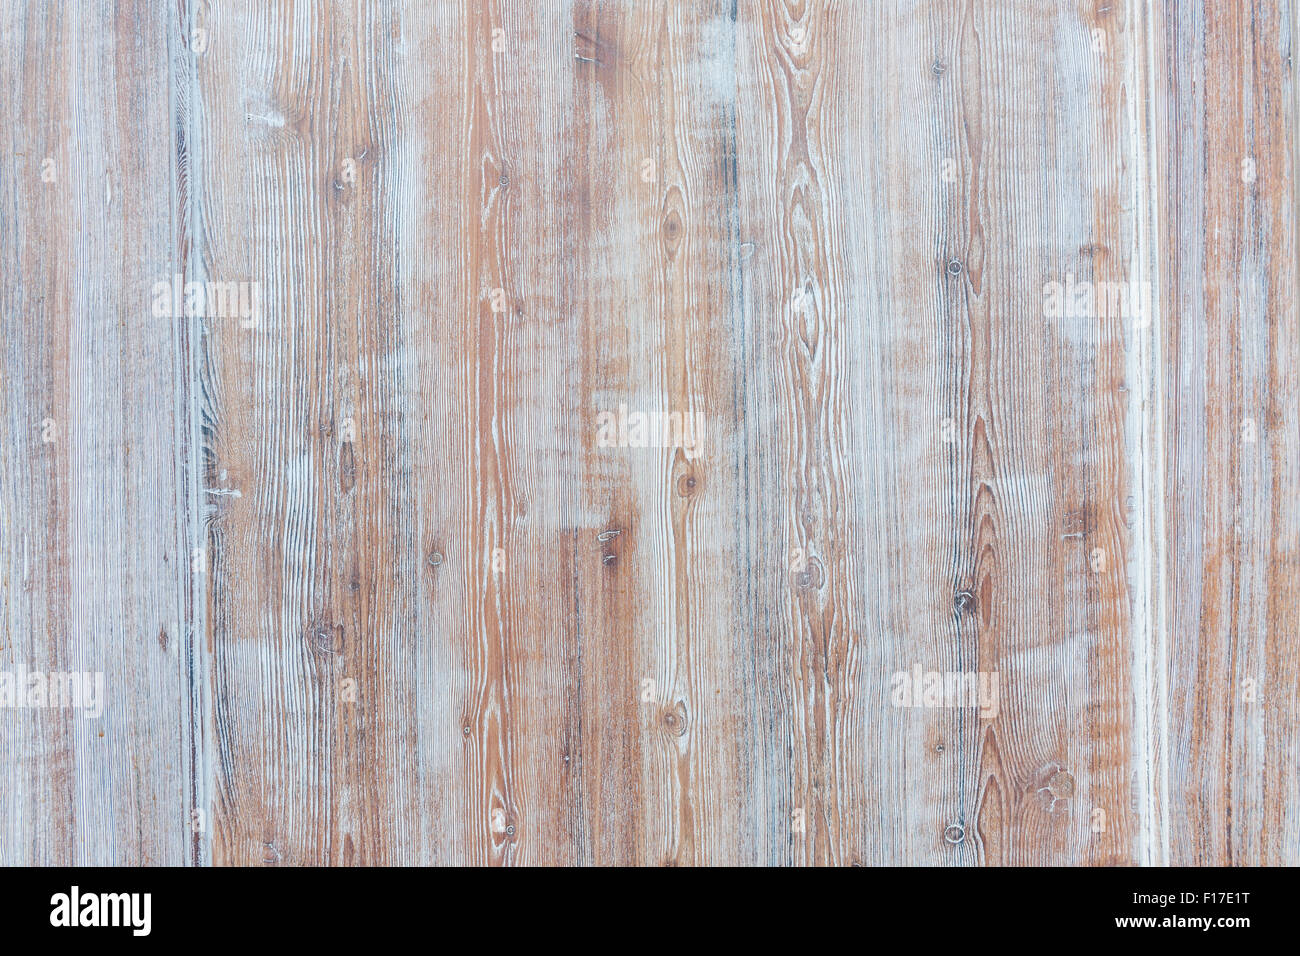 Invecchiato in legno di sfondo weathered rustico invecchiato di pannelli di legno con luce sbiadita della vernice blu che mostra brown woodgrain texture Foto Stock